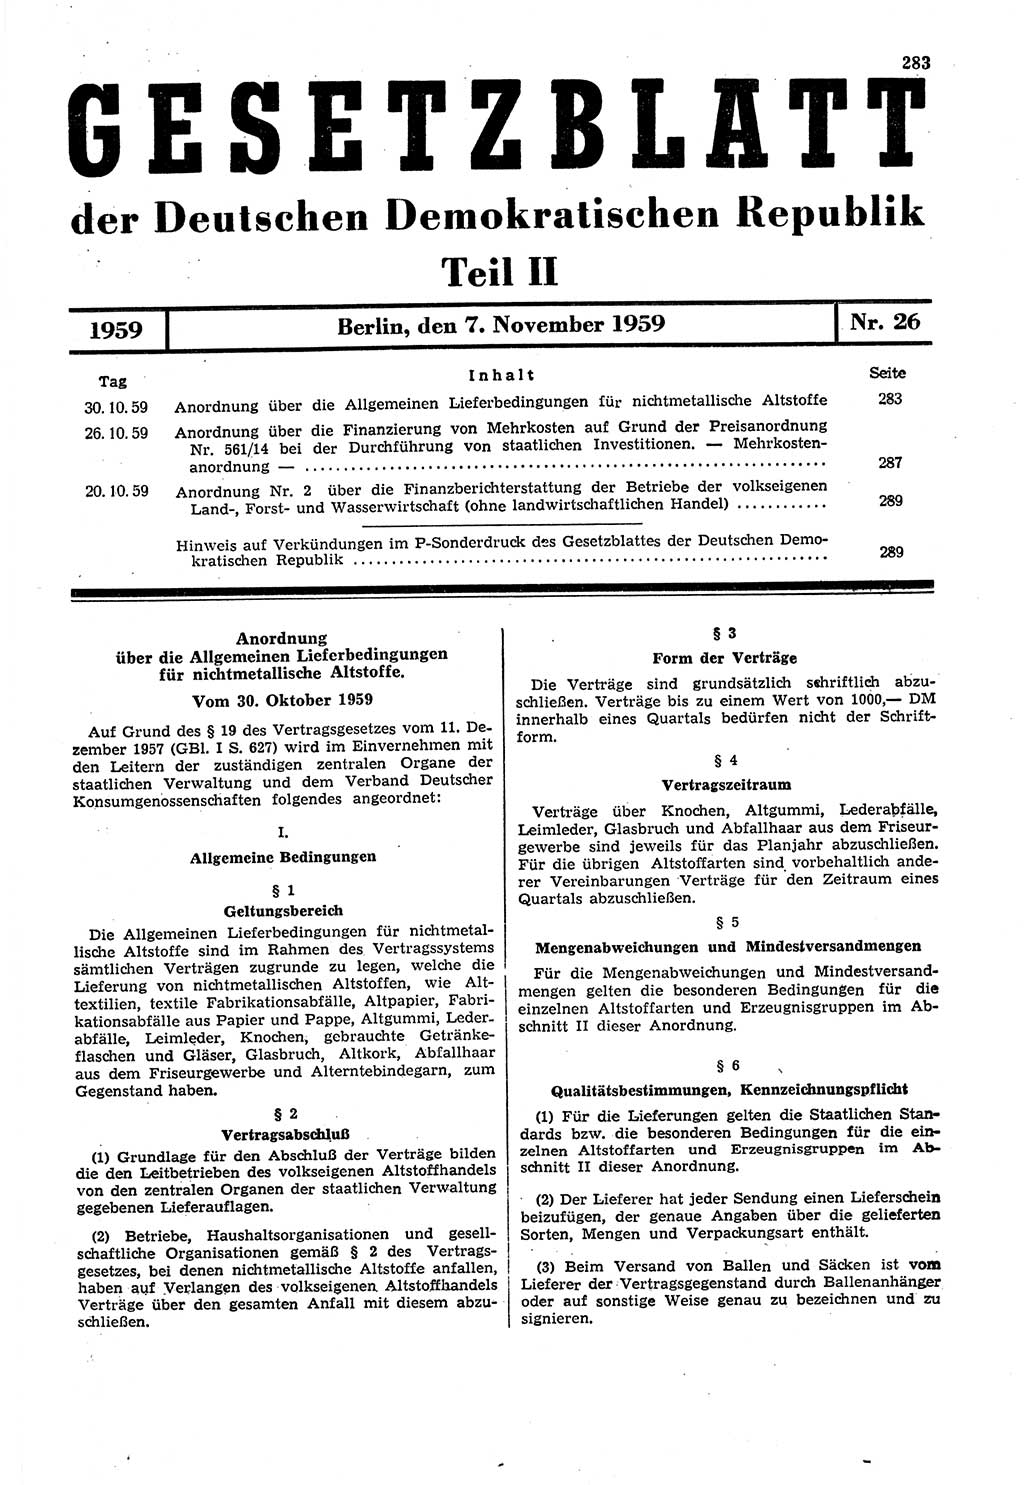 Gesetzblatt (GBl.) der Deutschen Demokratischen Republik (DDR) Teil ⅠⅠ 1959, Seite 283 (GBl. DDR ⅠⅠ 1959, S. 283)